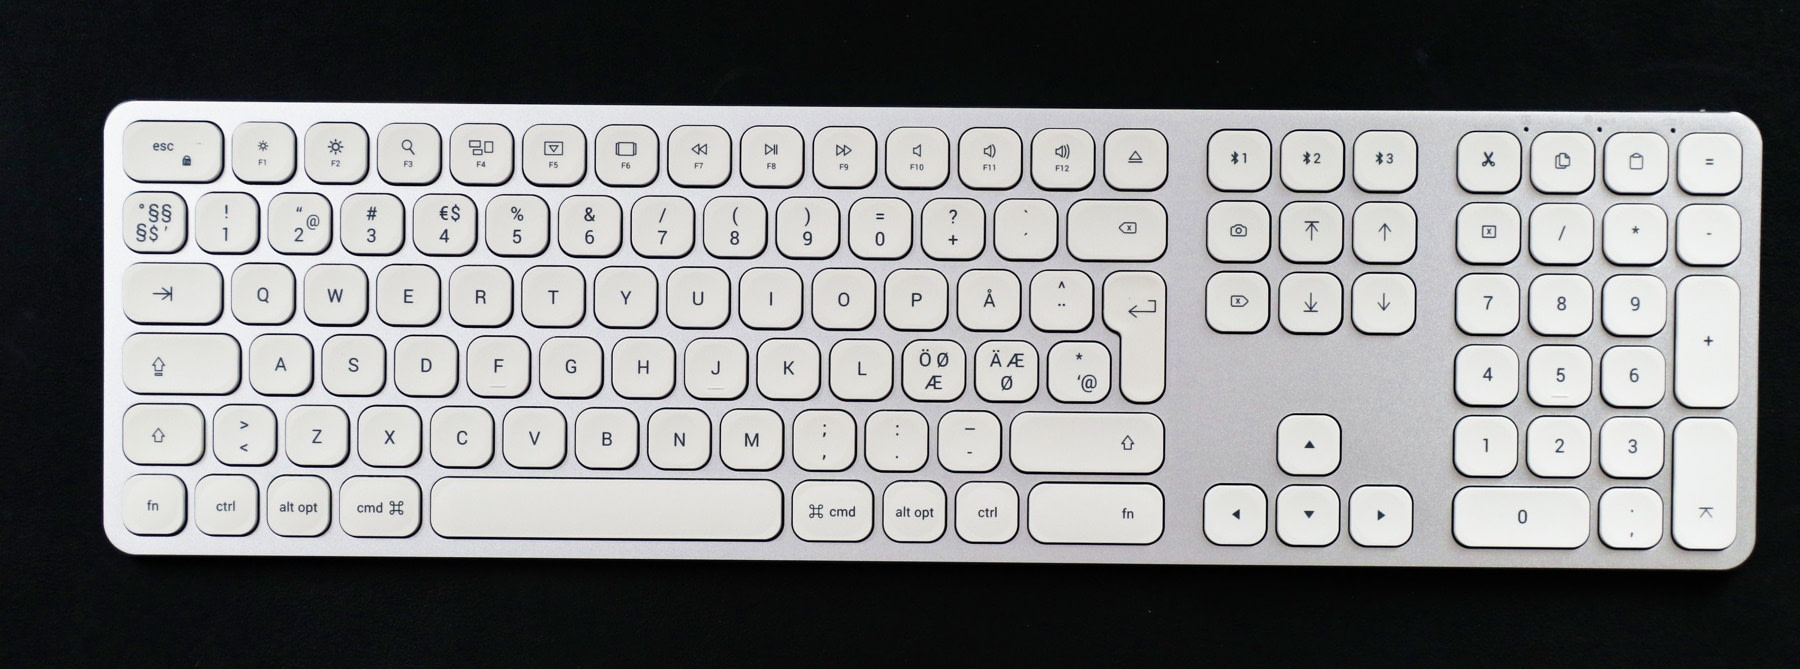 best wireless keyboard for mac bluetooth